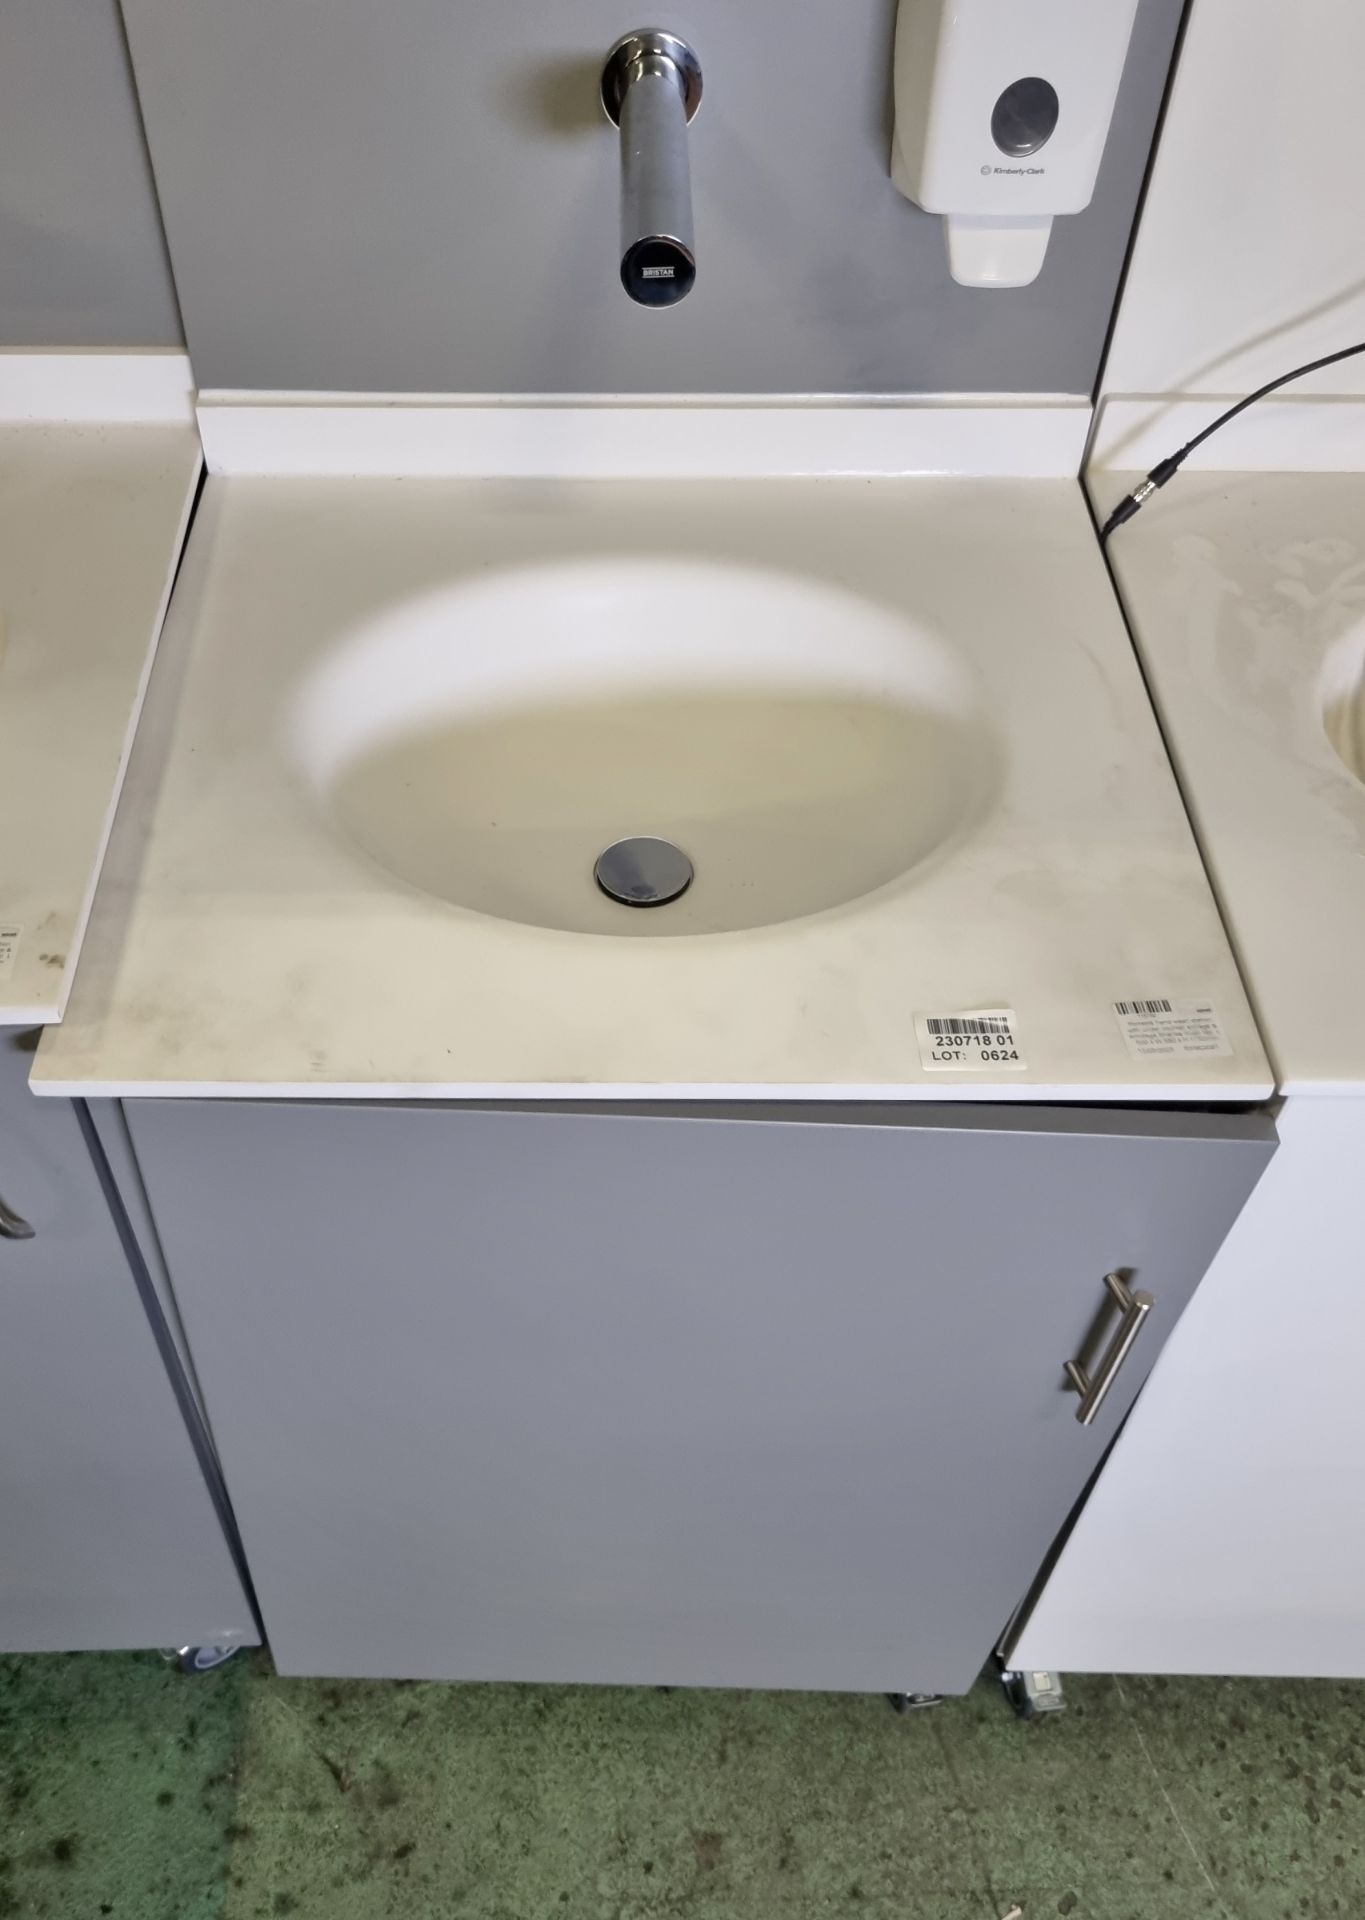 Portable hand wash station with under counter storage & Armitage Shanks mixer tap - Bild 2 aus 4